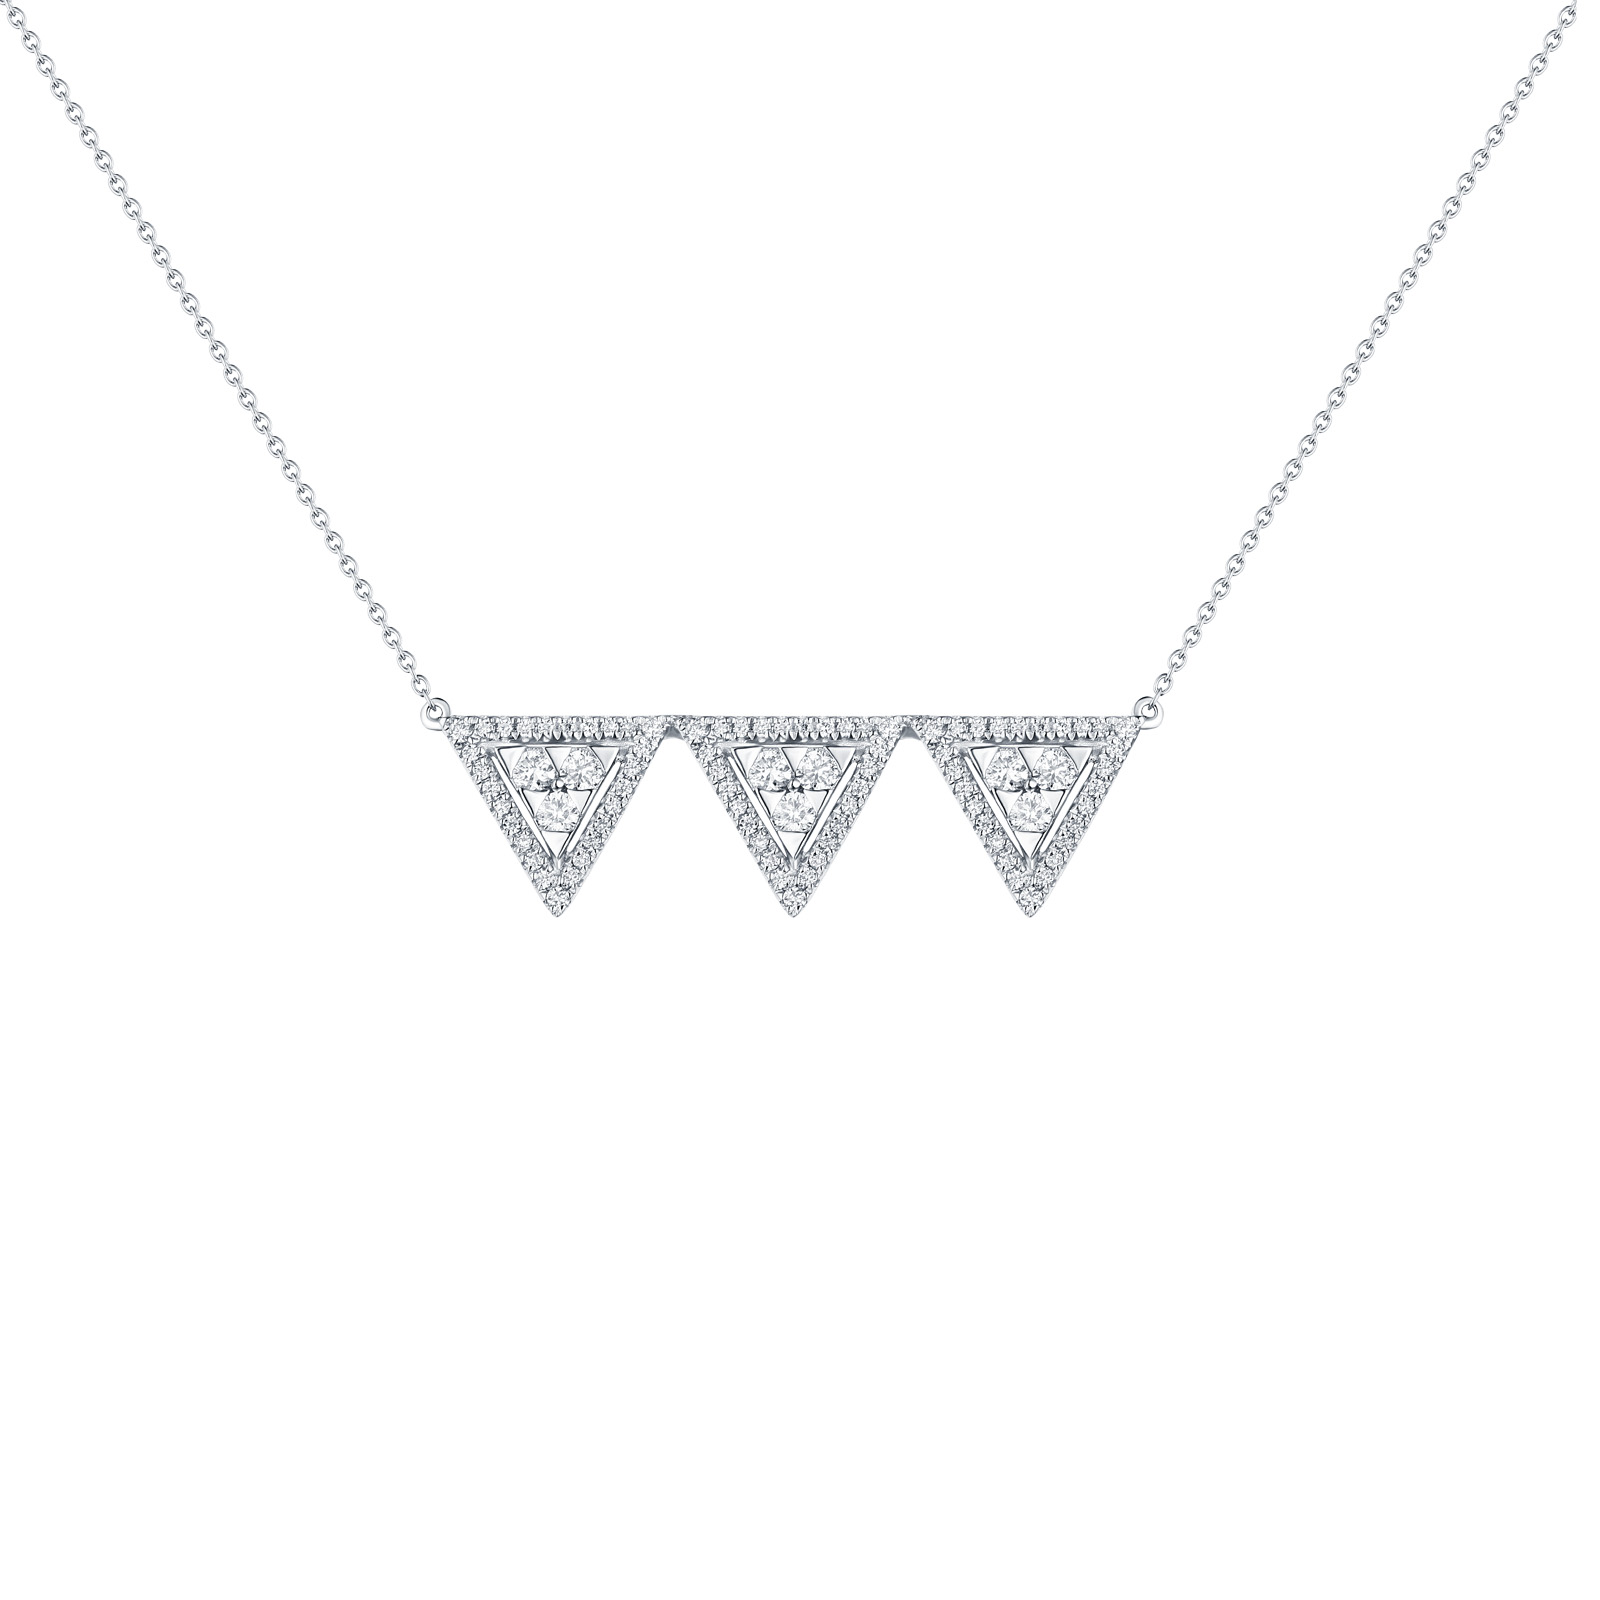 NL25105WHT- 14K White Gold Diamond Necklace, 0.46 TCW